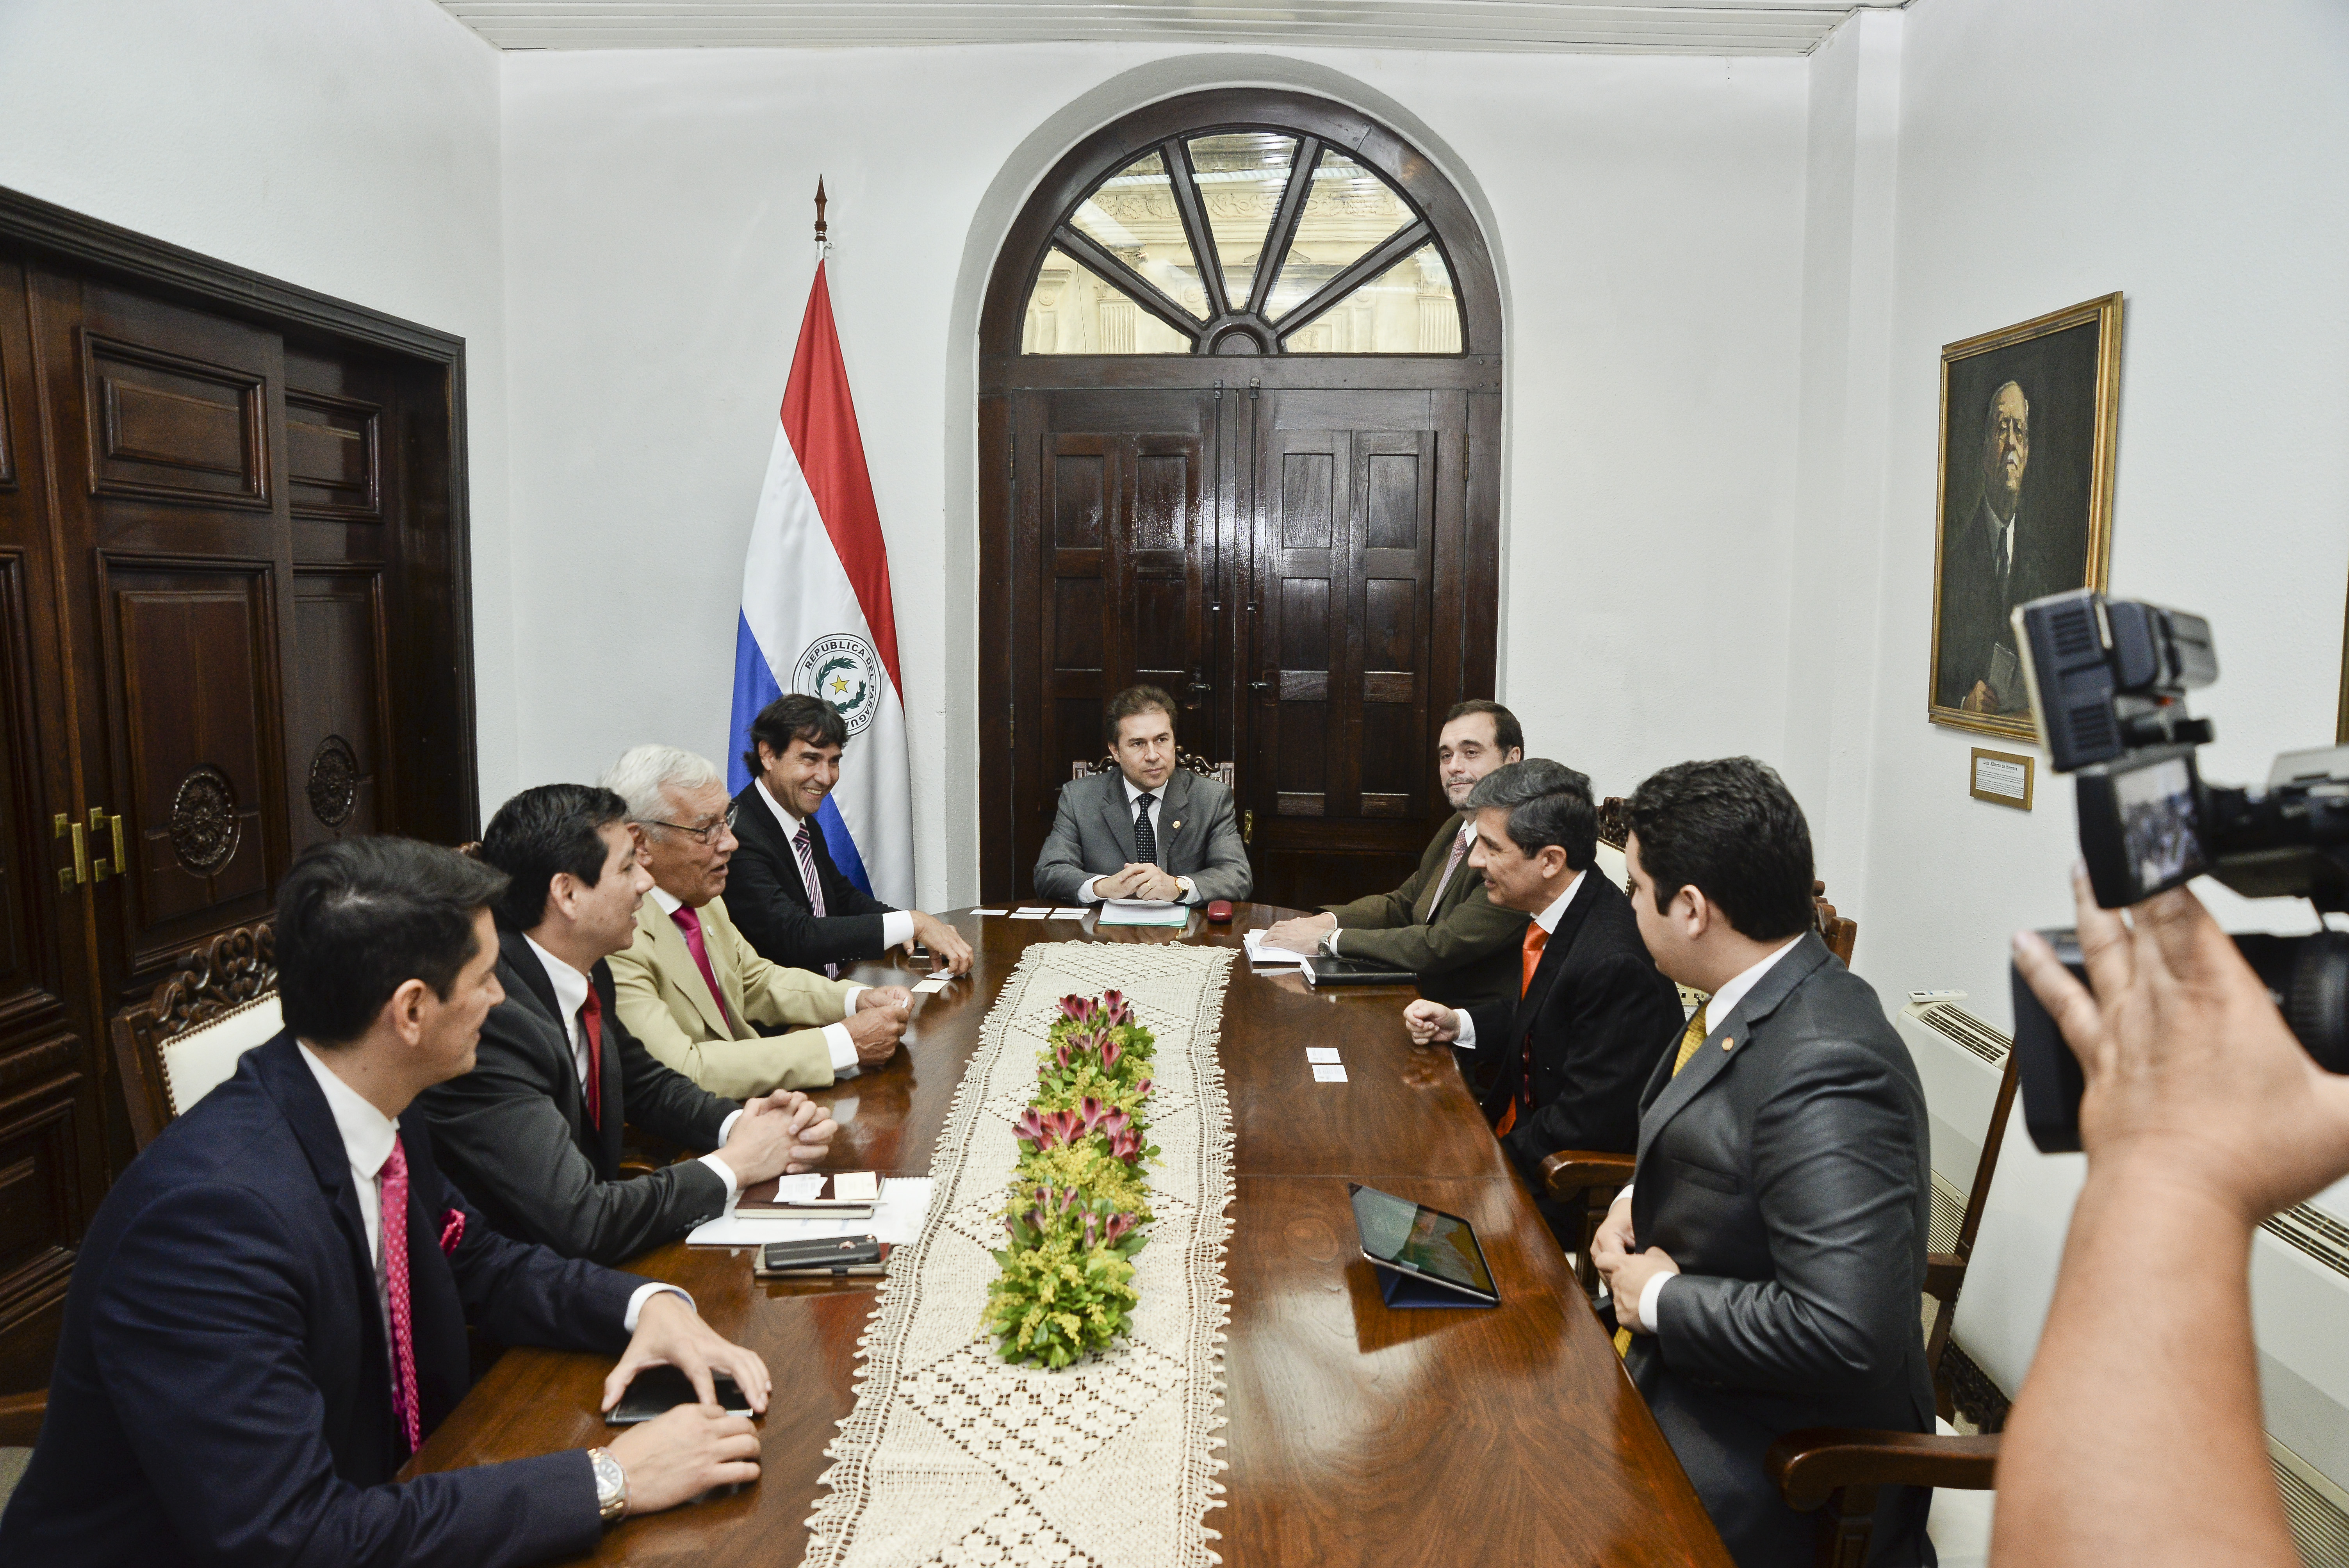 Empresarios invitan al Paraguay a incentivar acercamiento con mercado del sureste asiático